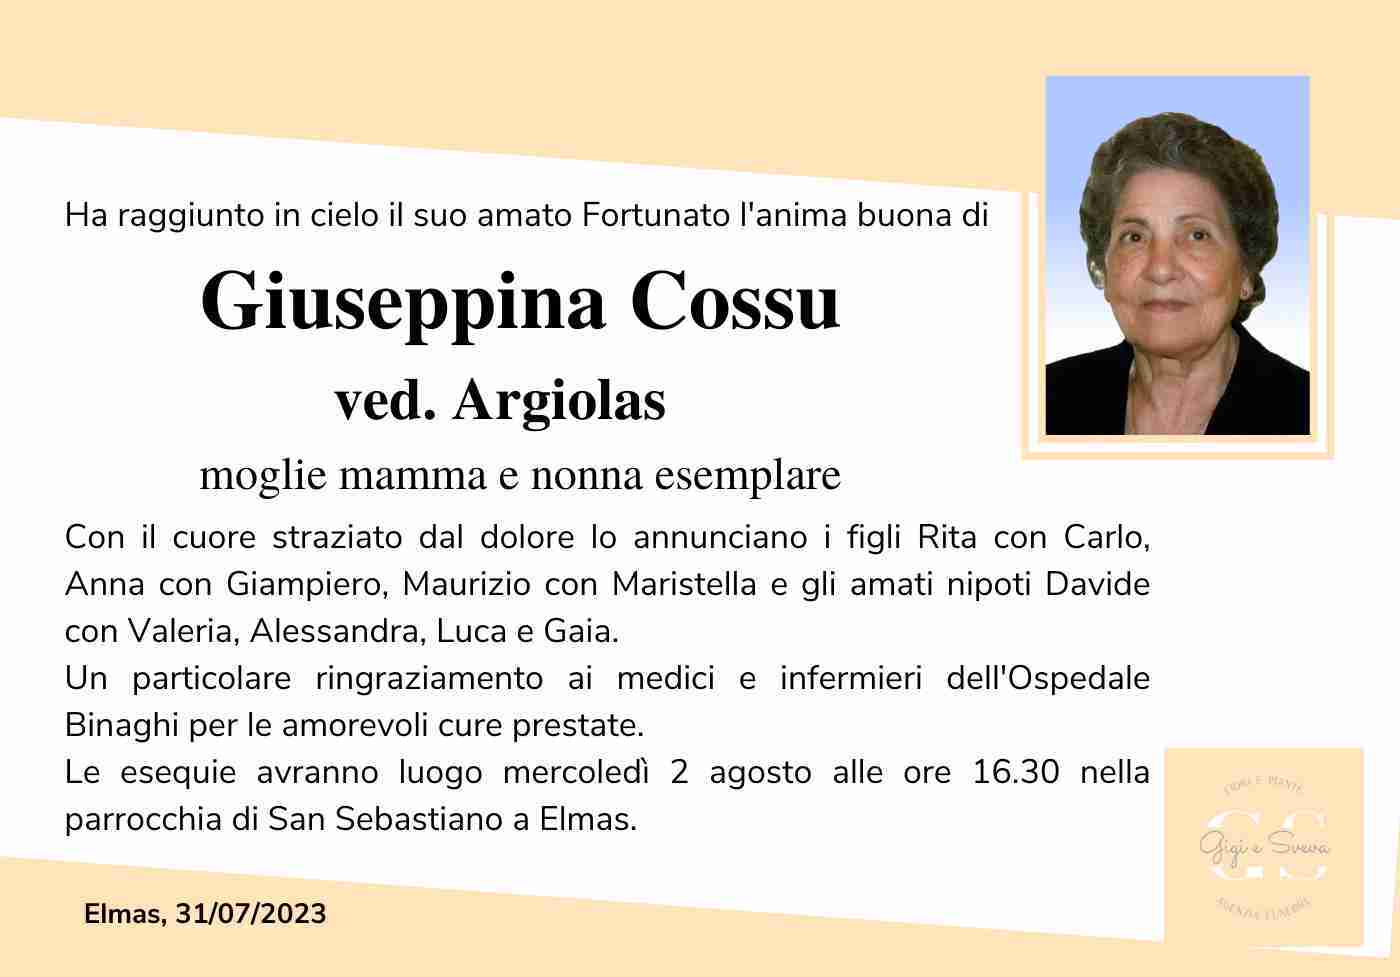 Giuseppina Cossu